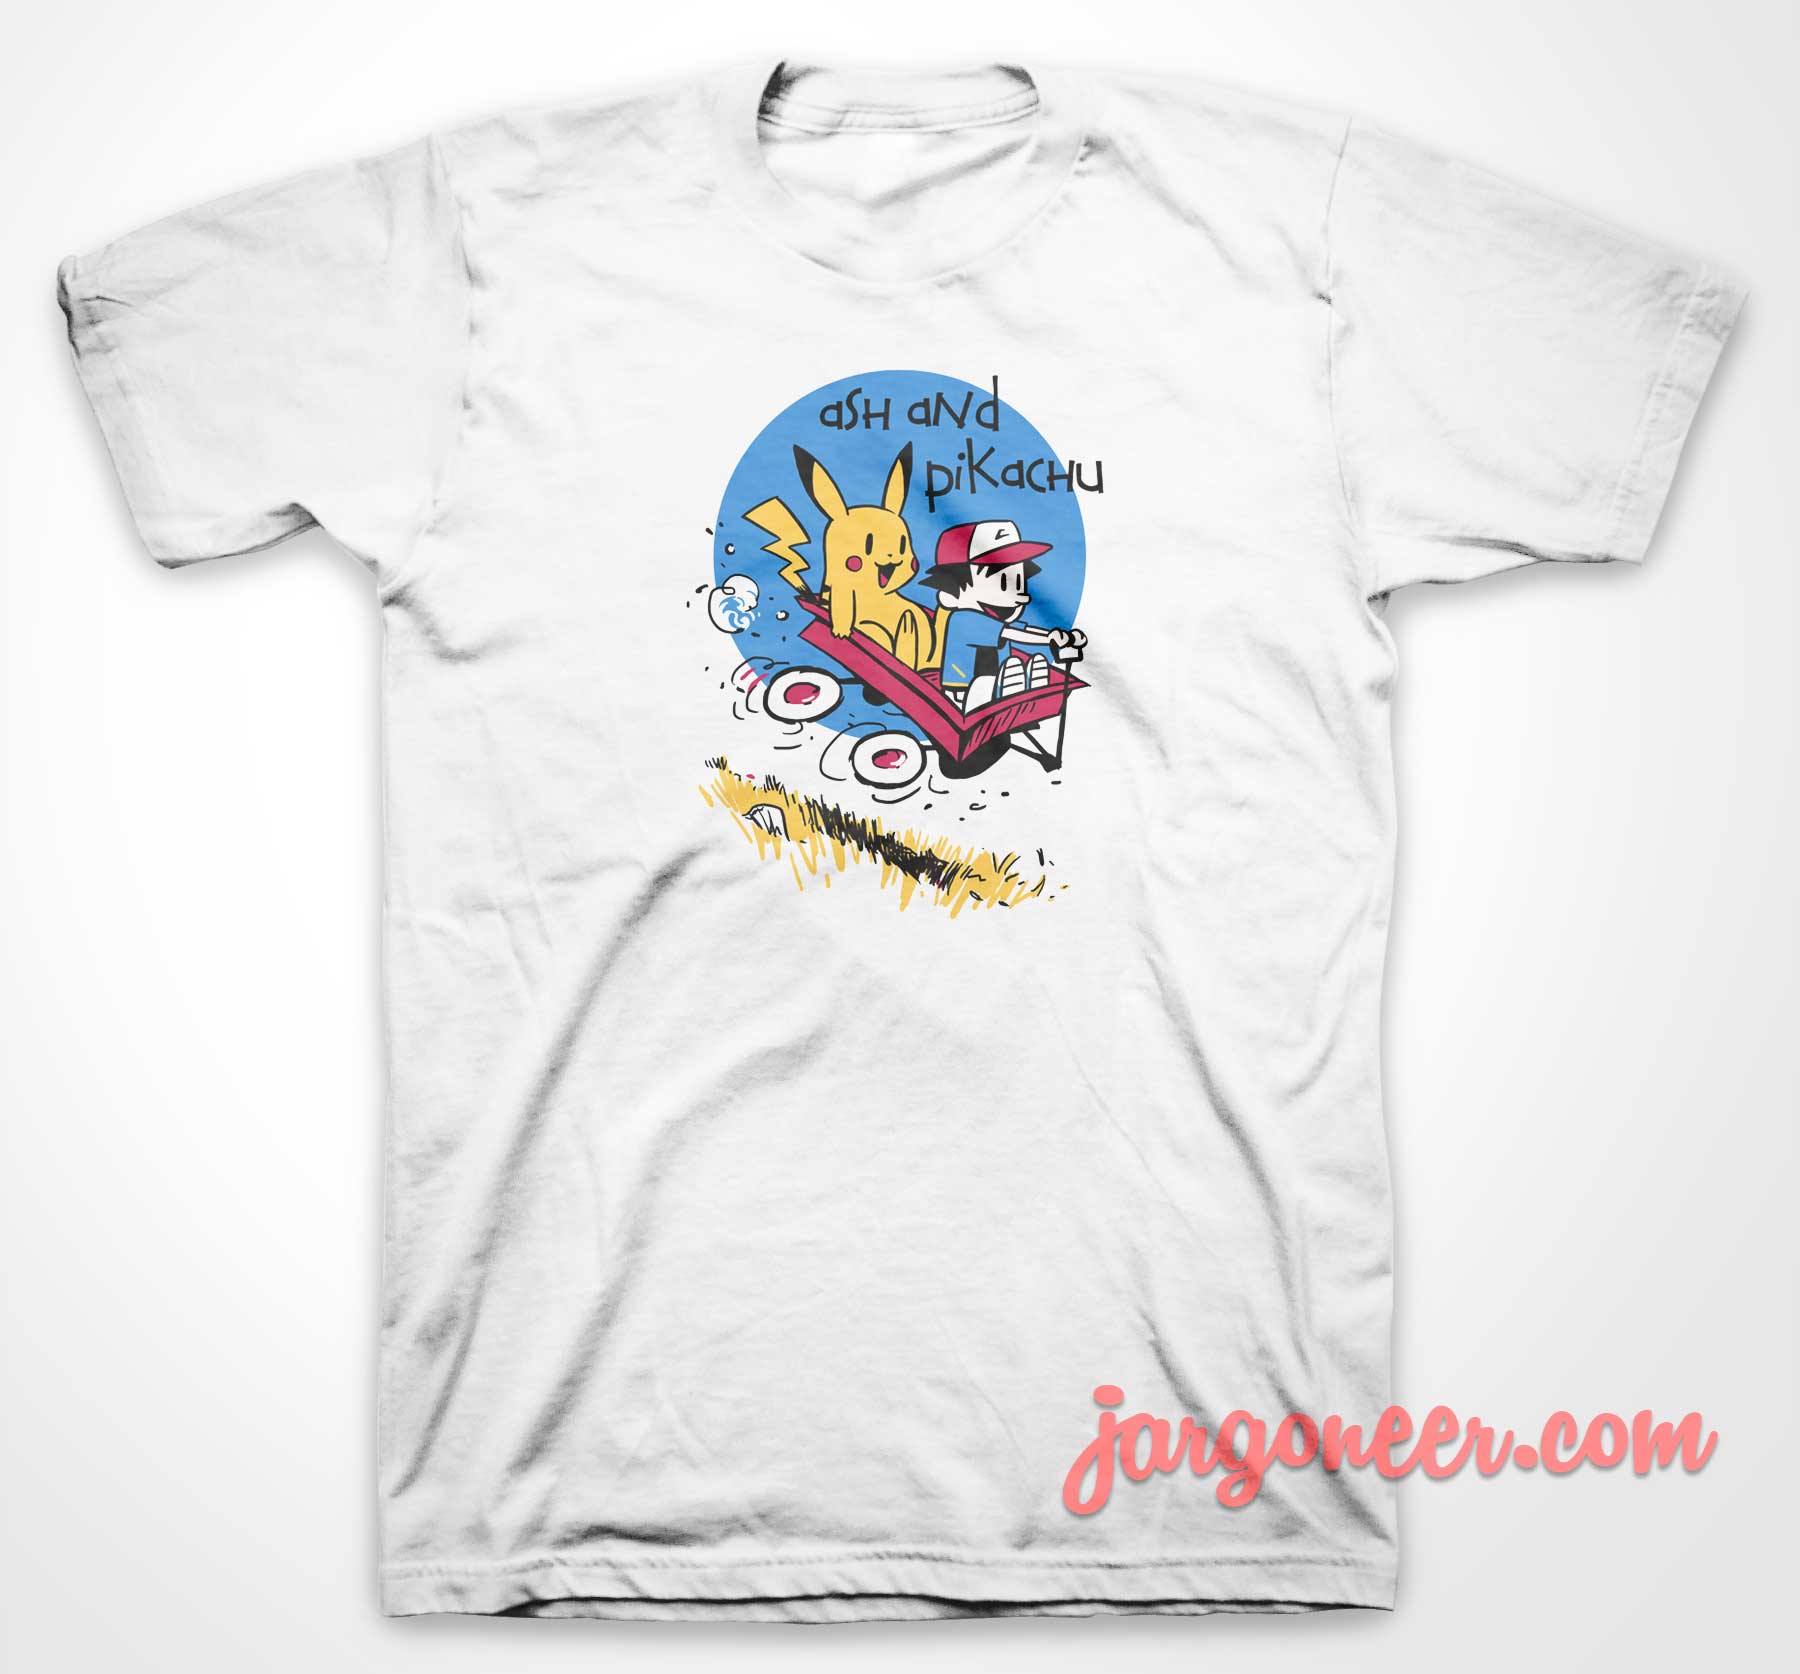 Ash And Pika Parody 3 - Shop Unique Graphic Cool Shirt Designs